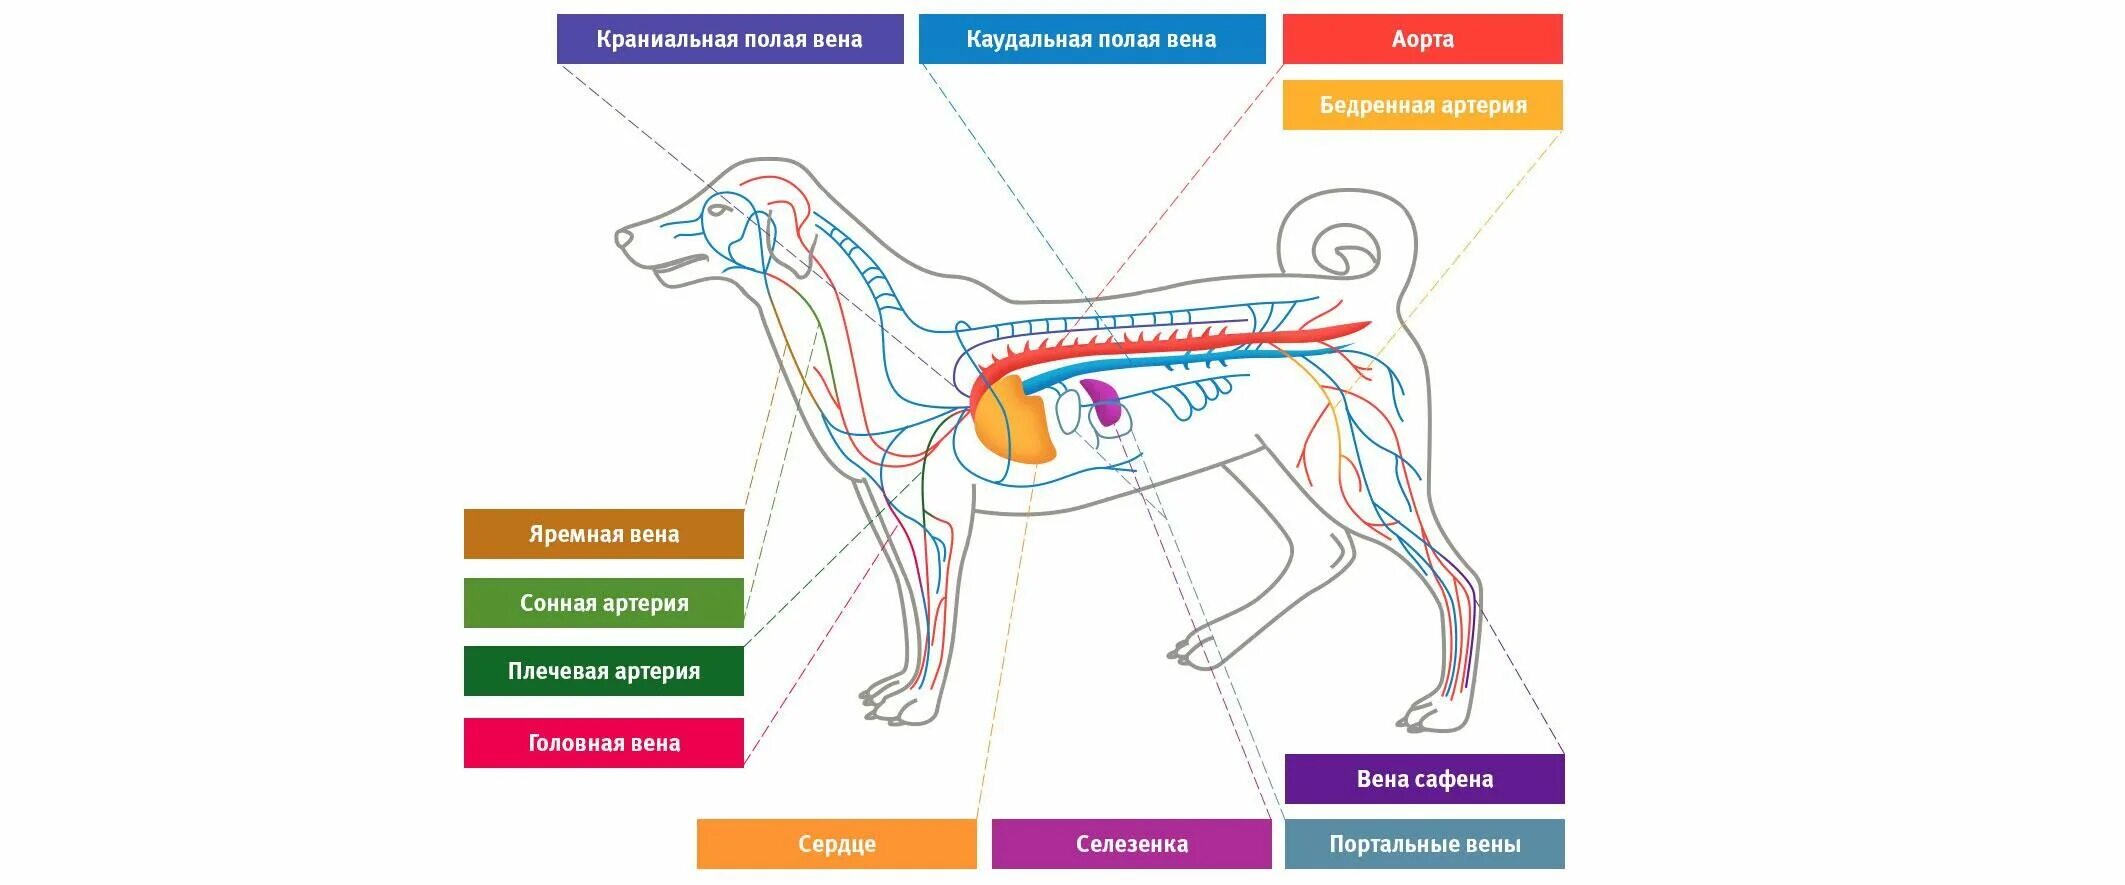 Сердечно-сосудистая система собаки анатомия. Кровеносная система собаки. Кровеносная система собаки схема. Система кровообращения собаки. Сердце собаки расположено